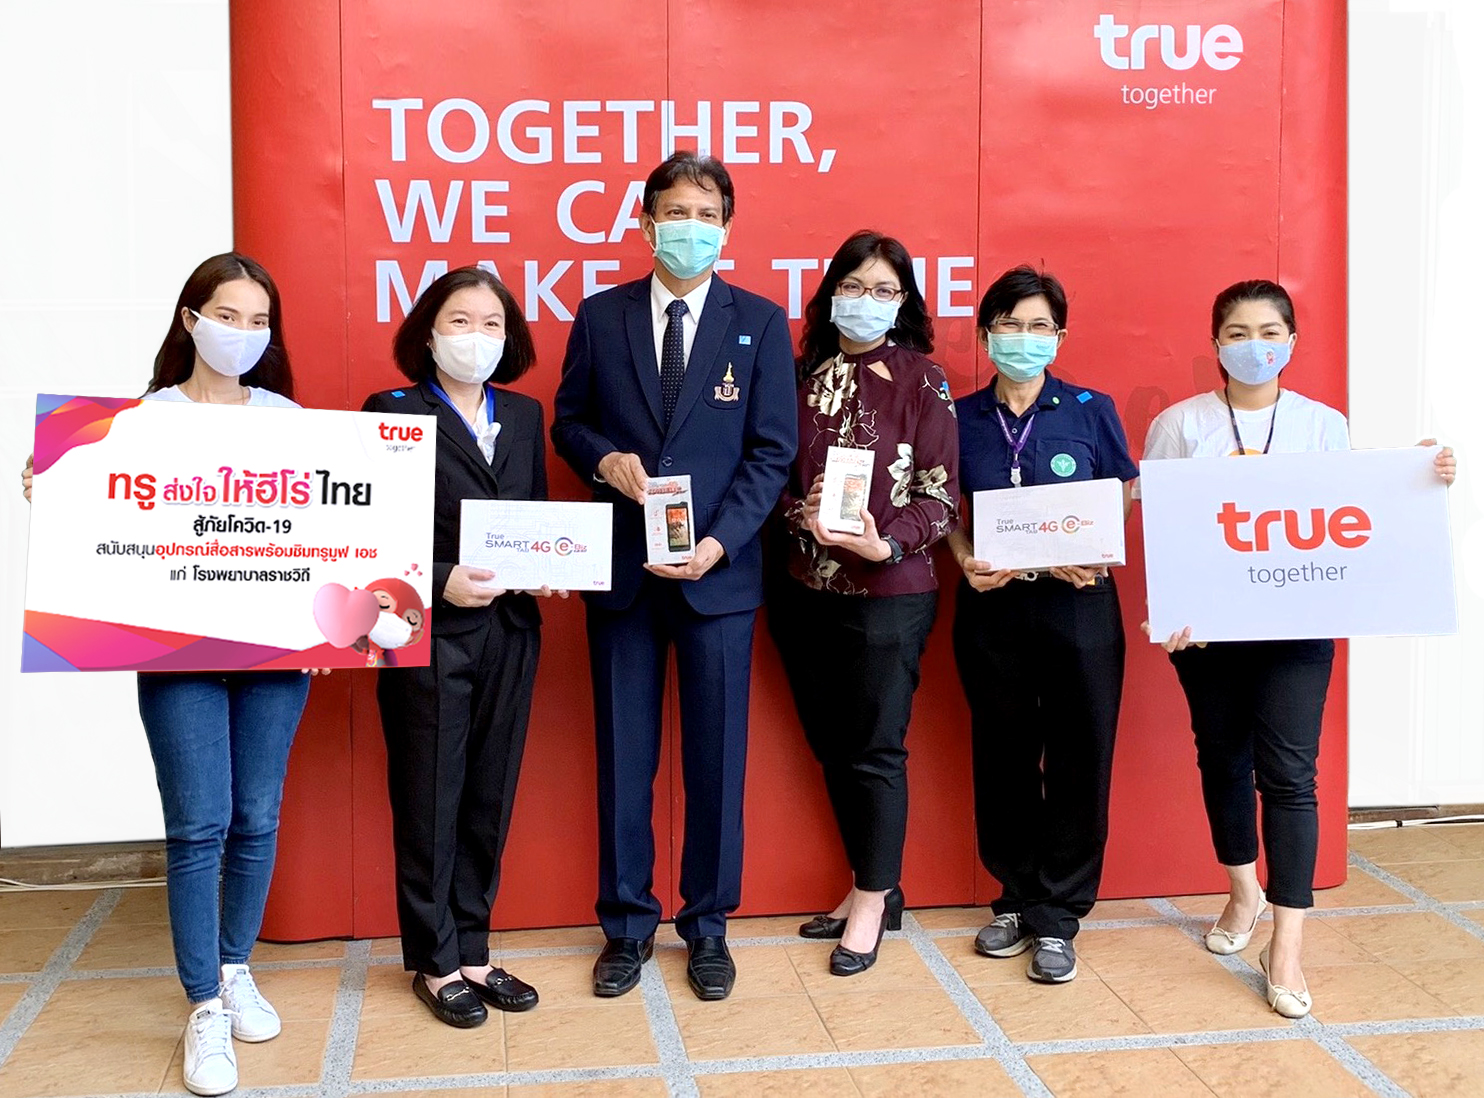 ภาพข่าว: ทรู ส่งใจให้ฮีโร่ไทย สู้ภัยโควิด-19 แก่บุคลากรทางการแพทย์ โรงพยาบาลราชวิถี